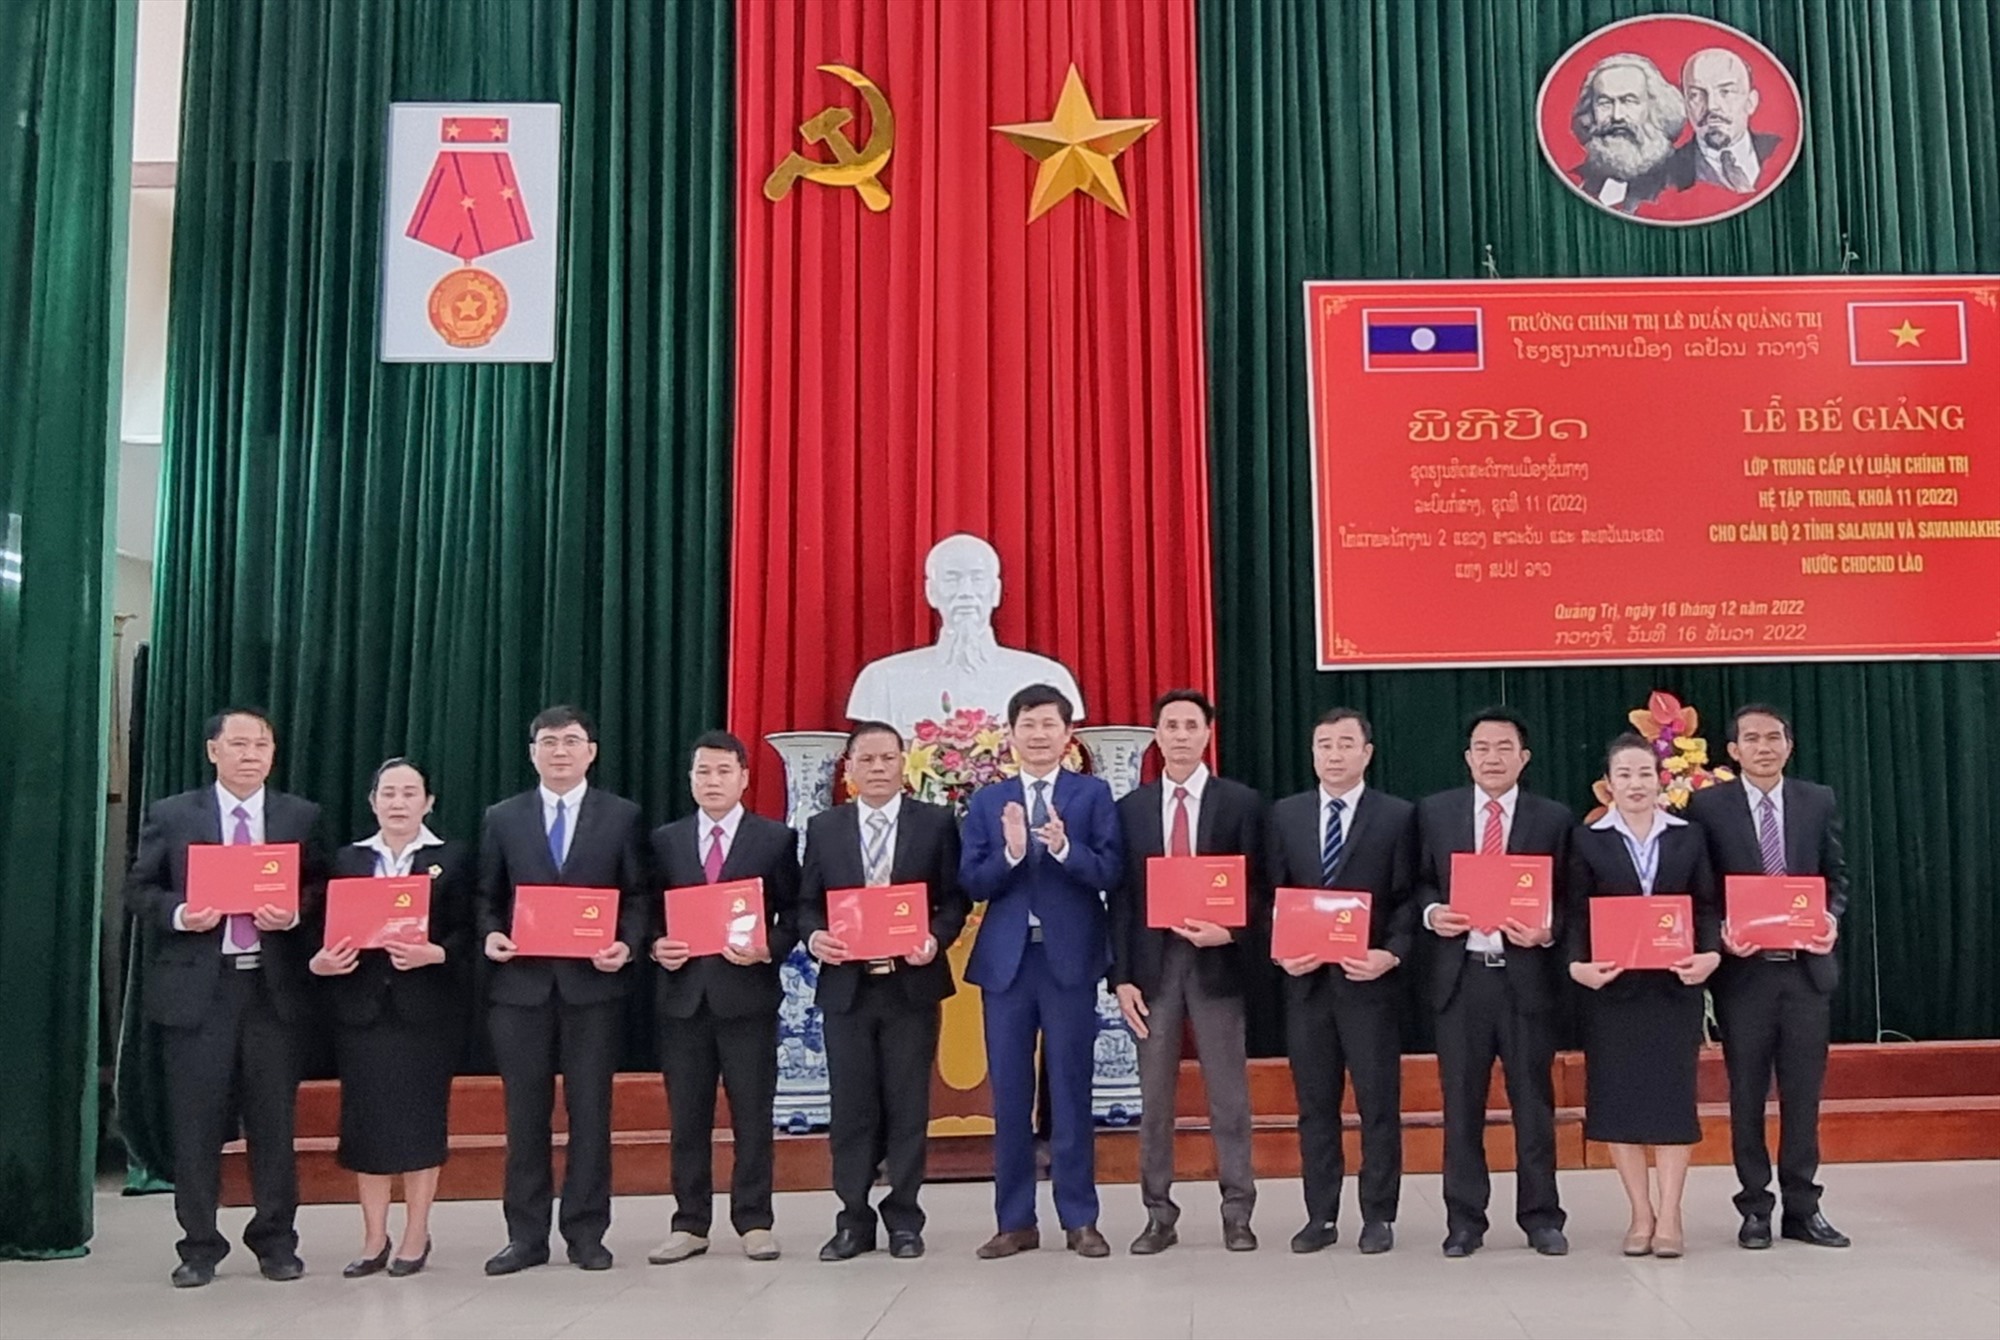 Hiệu trưởng Trường Chính trị Lê Duẩn Dương Hương Sơn trao bằng tốt nghiệp trung cấp lý luận chính trị cho các học viên - Ảnh: K.S